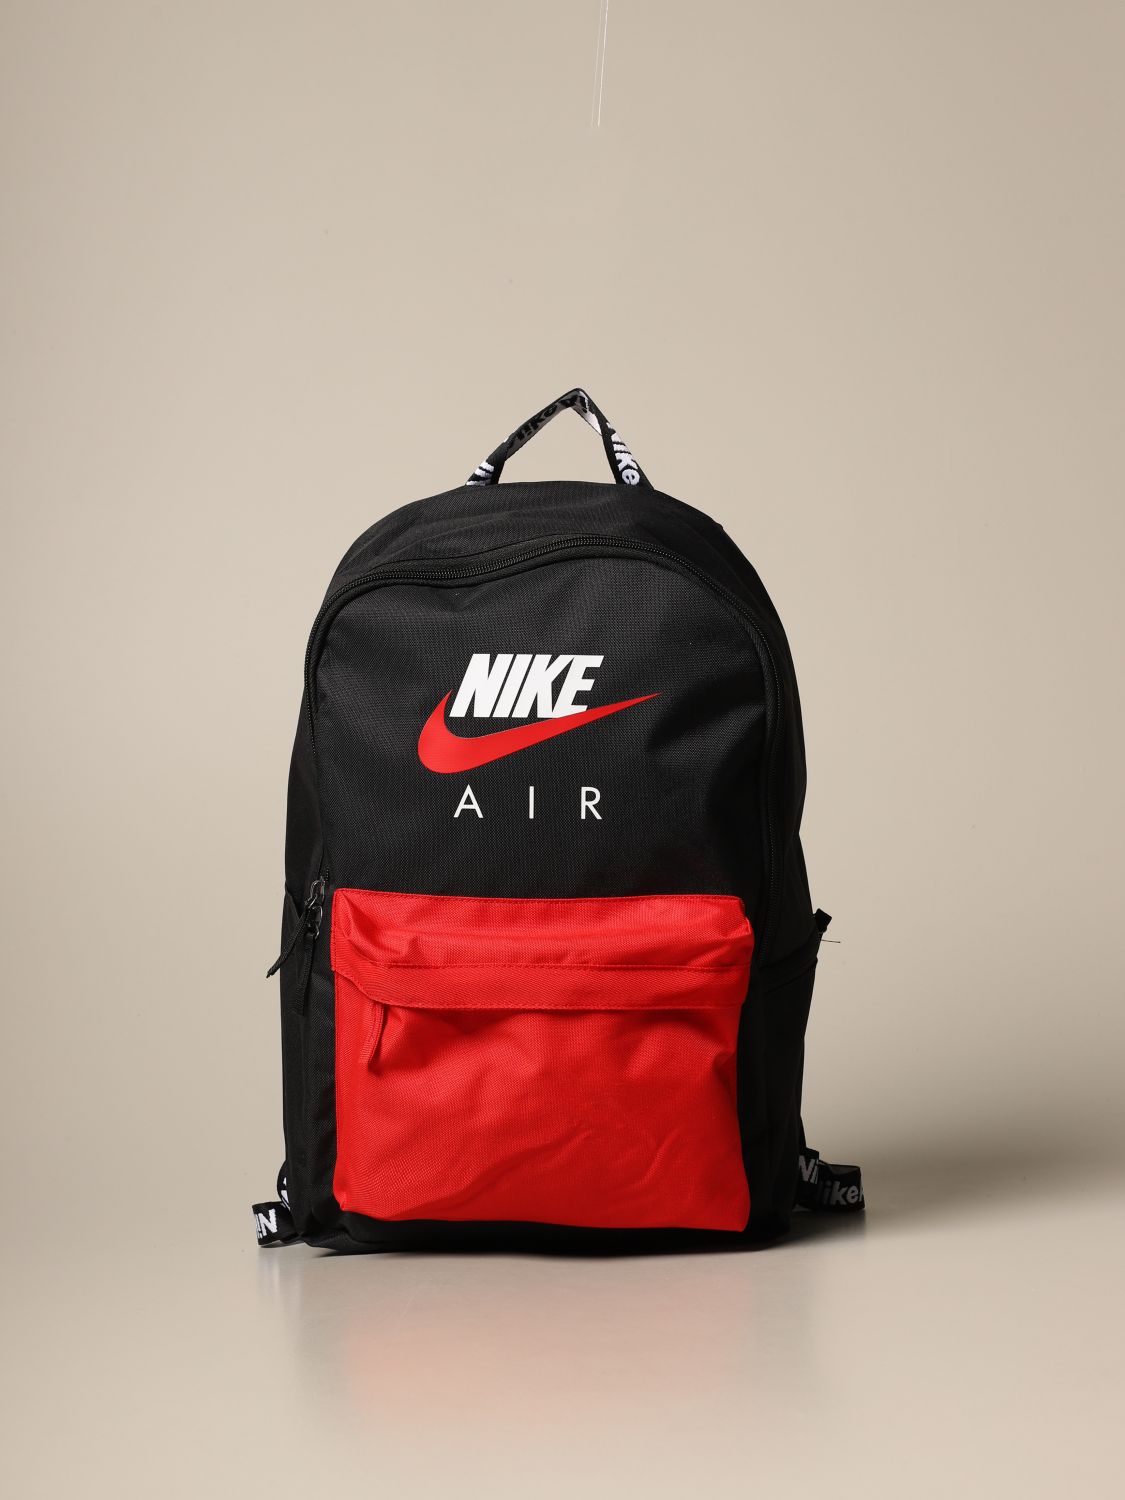 nike backpacks for men on sale